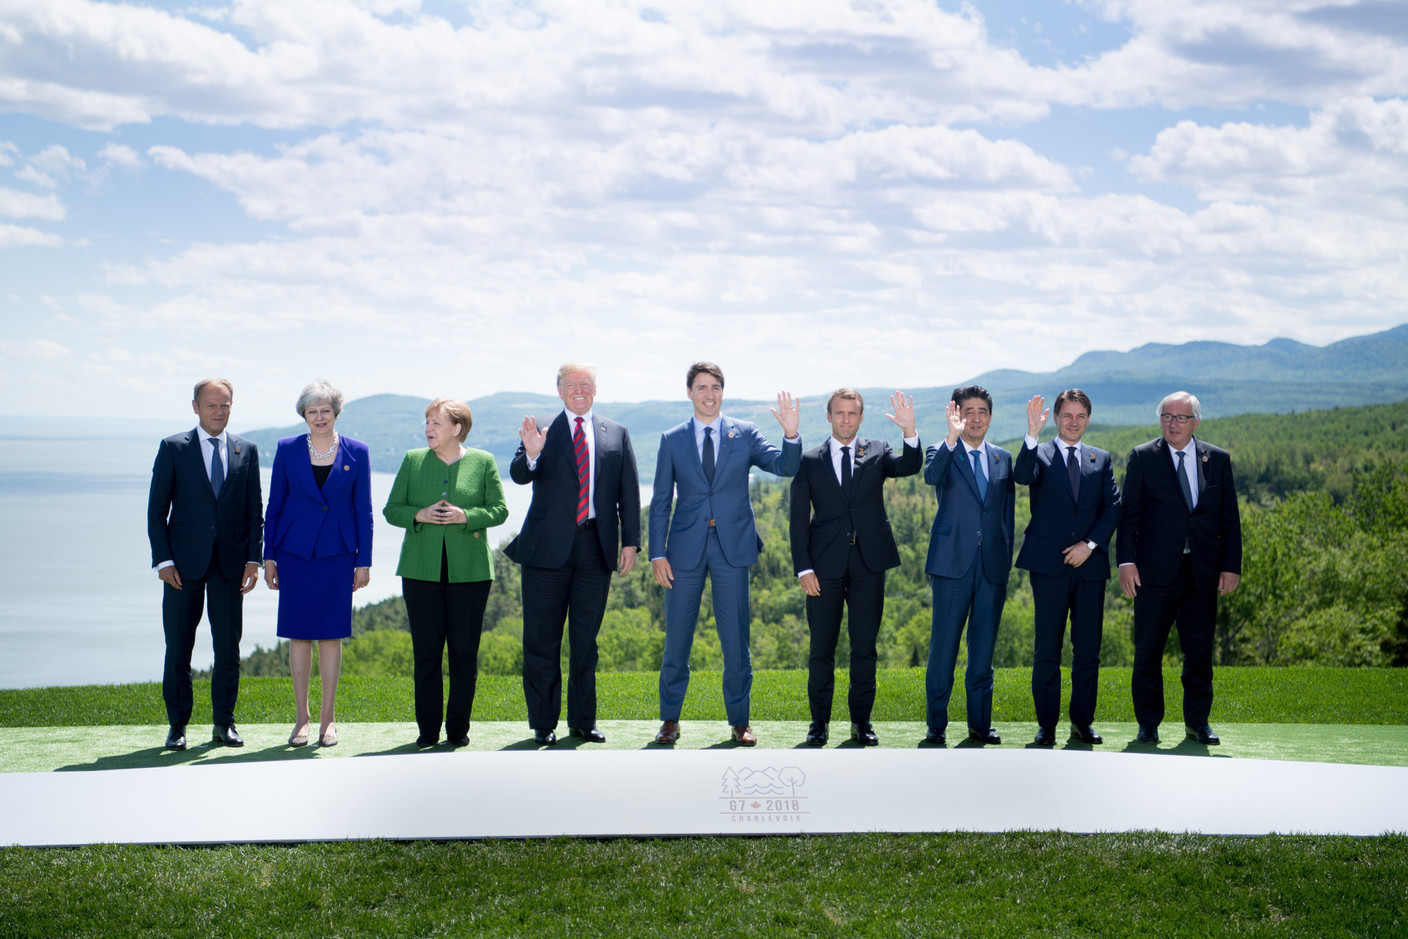 Le 8 juin 2018, Angela Merkel et la Première ministre britannique Theresa May sont les deux seules femmes à figurer sur la photo de famille du G7, aux côtés notamment de Jean-Claude Juncker.  (Photo: EU)